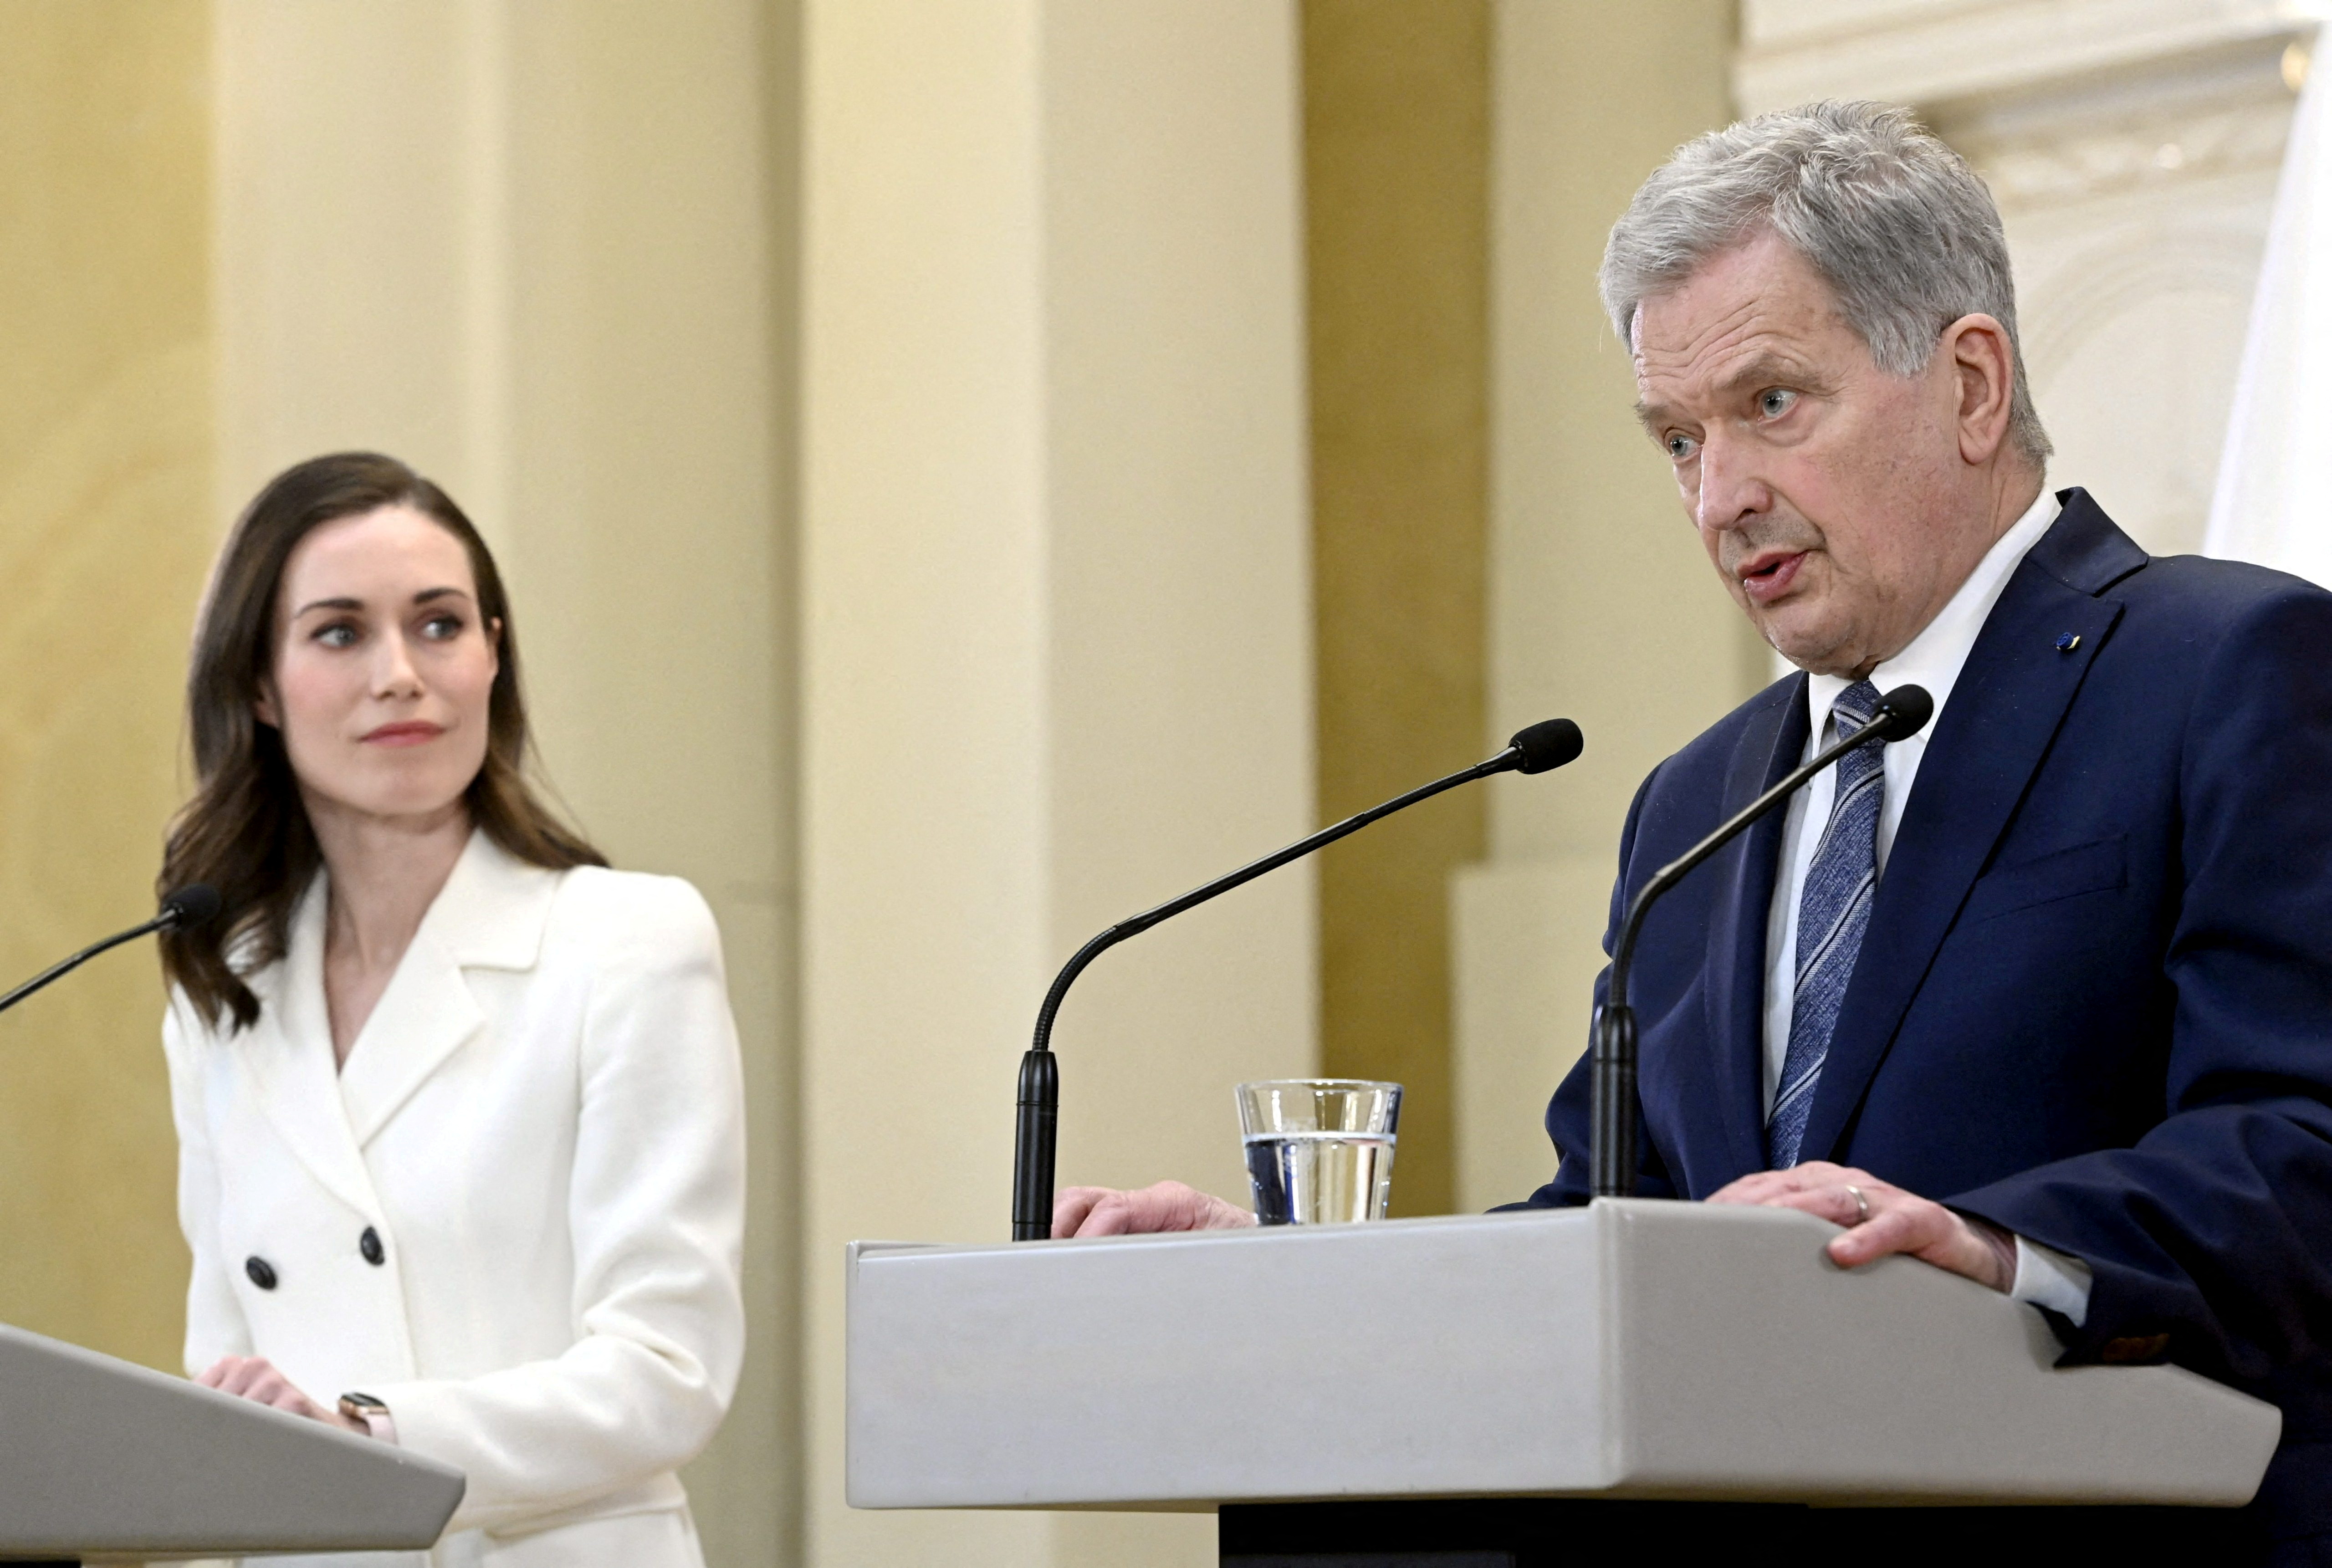 La primera ministra finlandesa Sanna Marin y el presidente finlandés Sauli Niinisto (Heikki Saukkomaa/ Lehtikuva/via REUTERS)